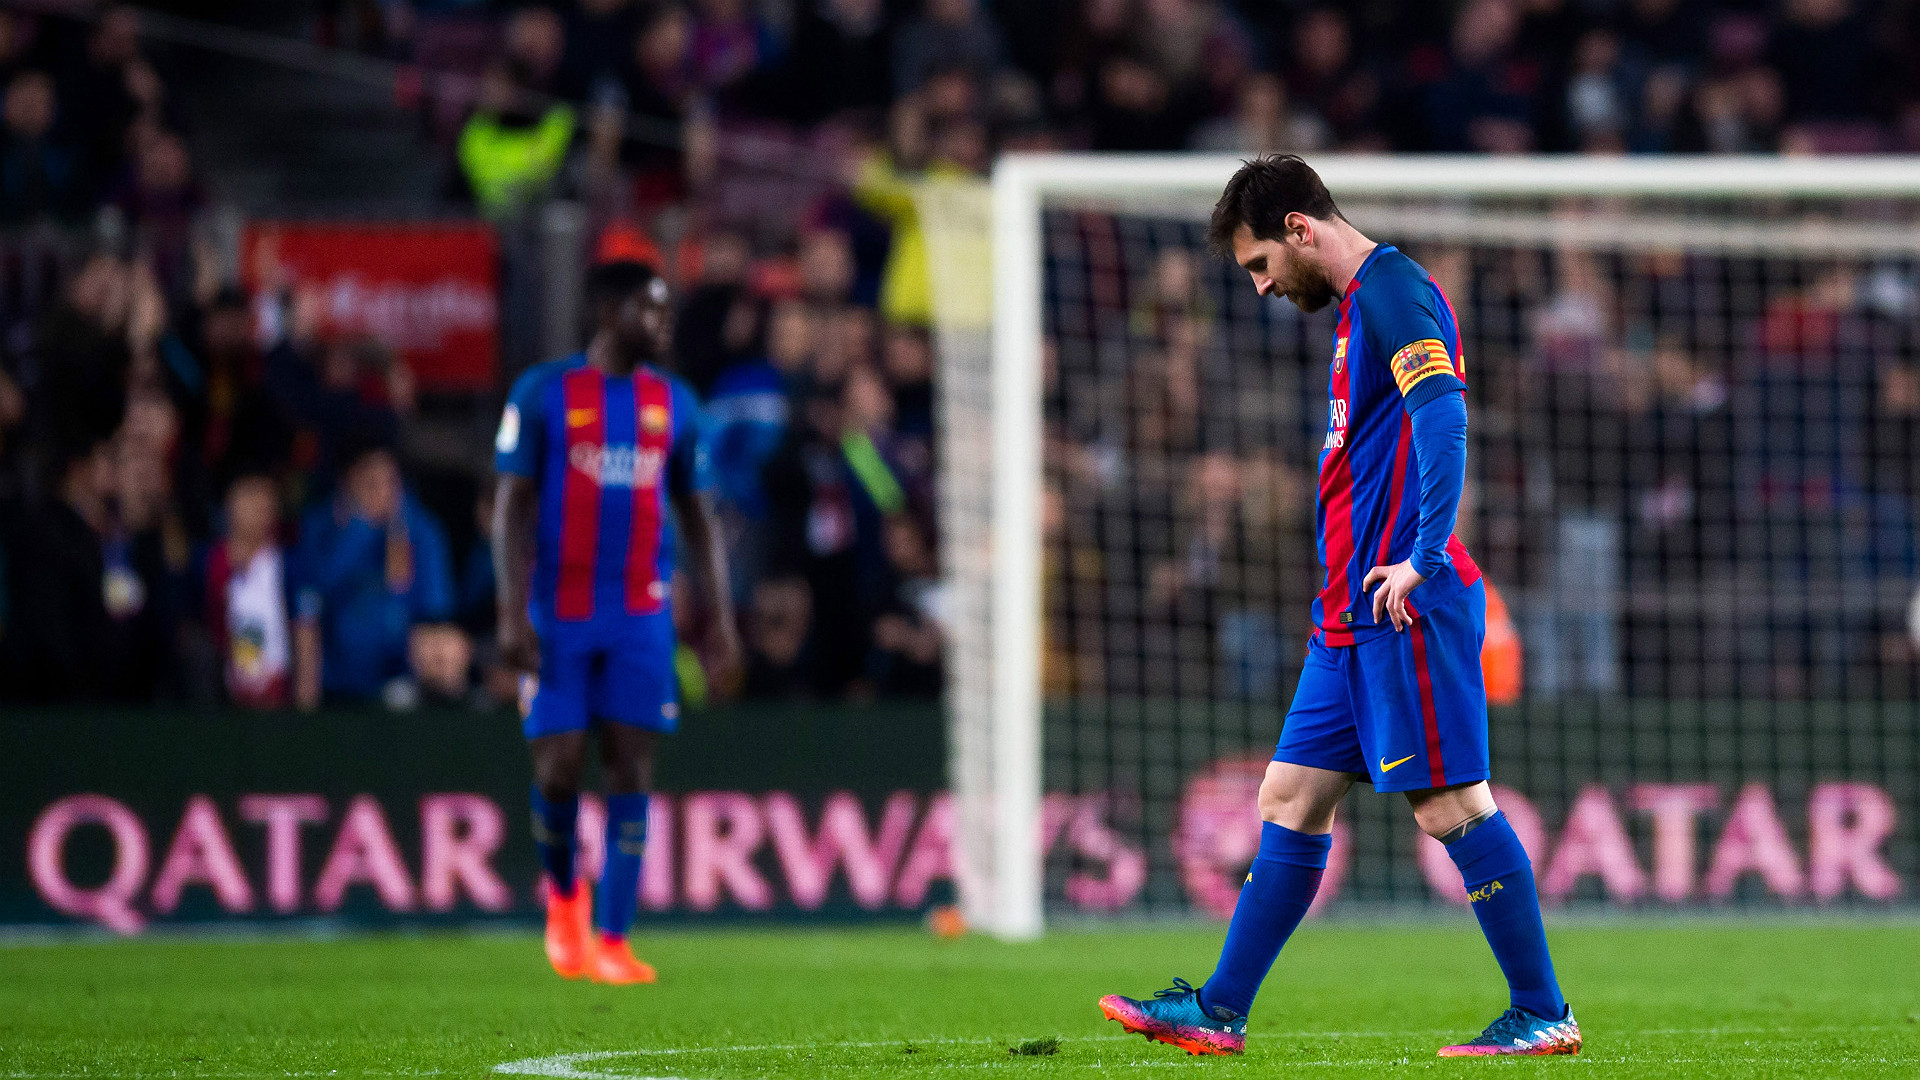 Nhớ Neymar, Messi chưa chịu gia hạn hợp đồng với Barca - Bóng Đá